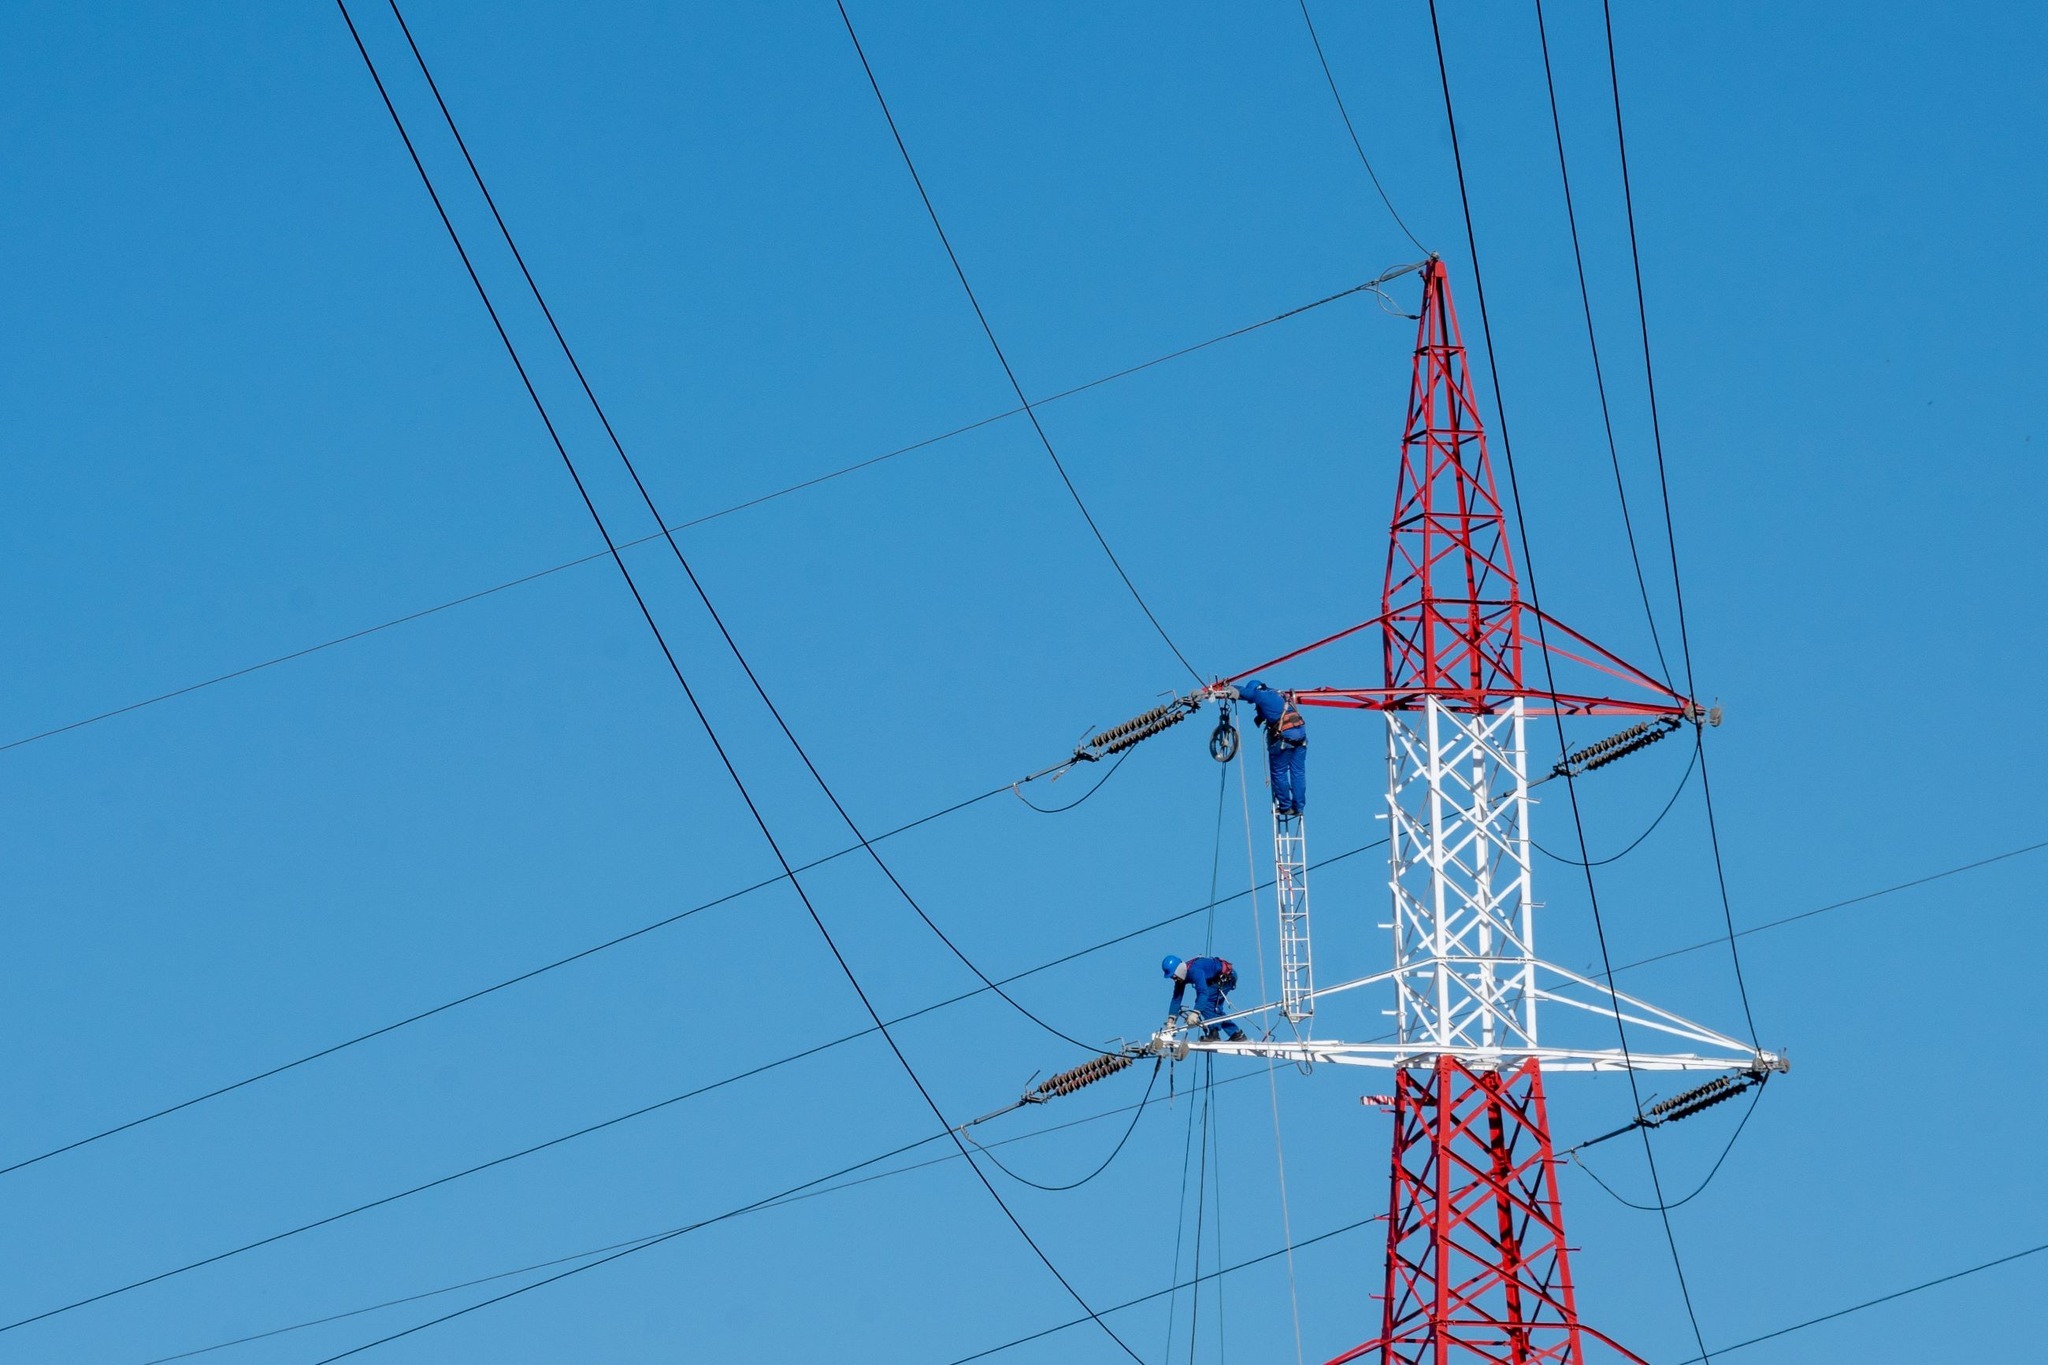 Reţele Electrice Dobrogea a modernizat linii de înaltă tensiune şi staţii de transformare printr-un proiect de aproximativ 11 milioane de lei cofinanţat prin POIM 2014-2020